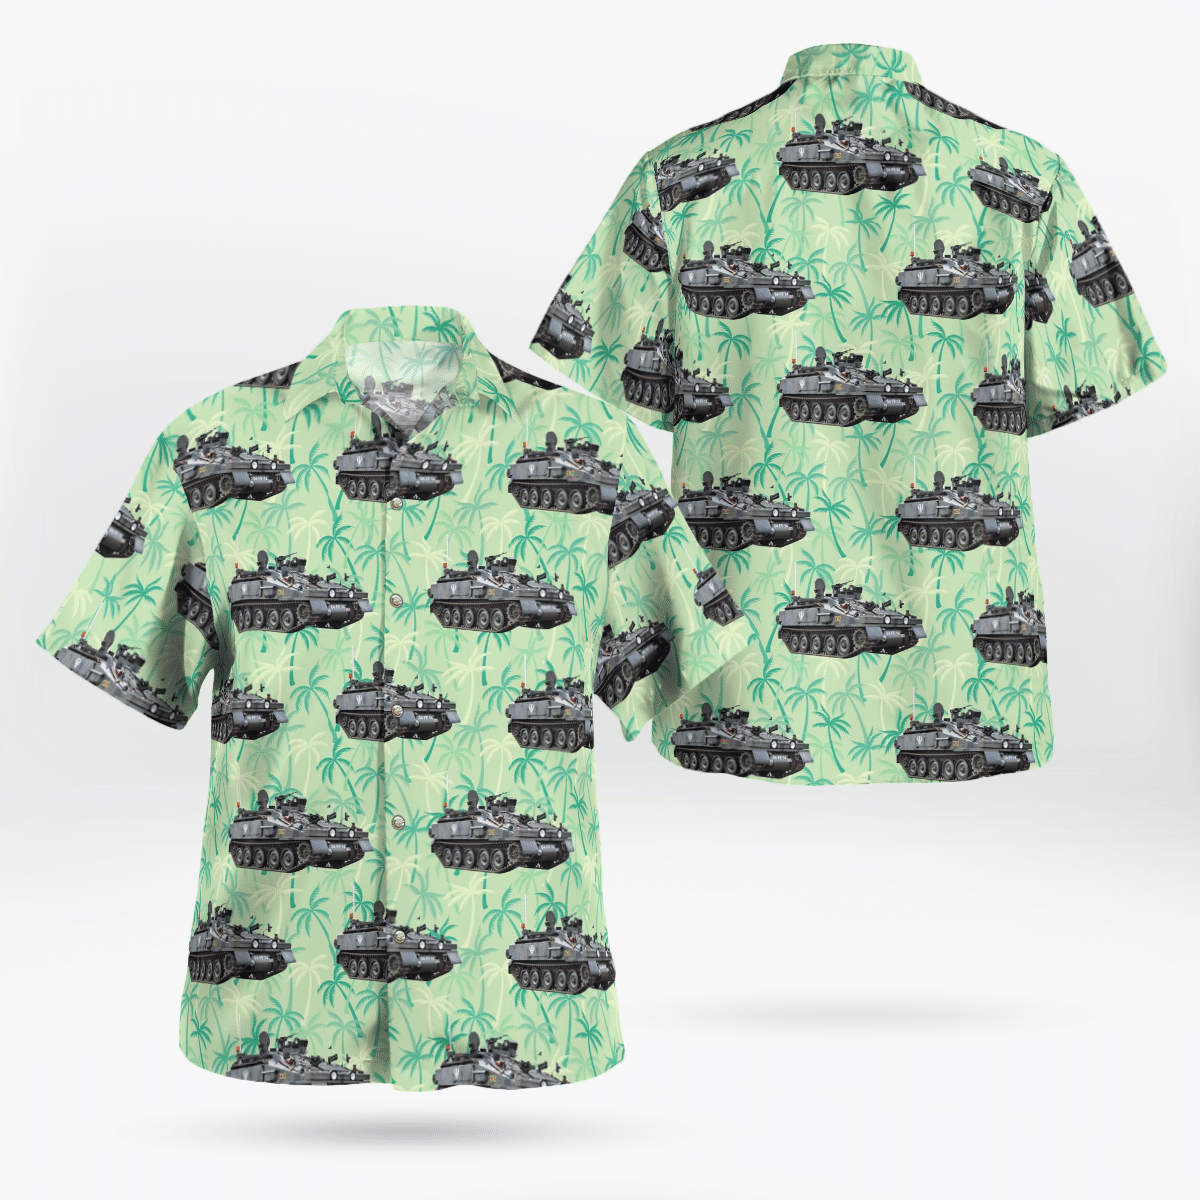 You won't regret buying these Aloha Shirt 45